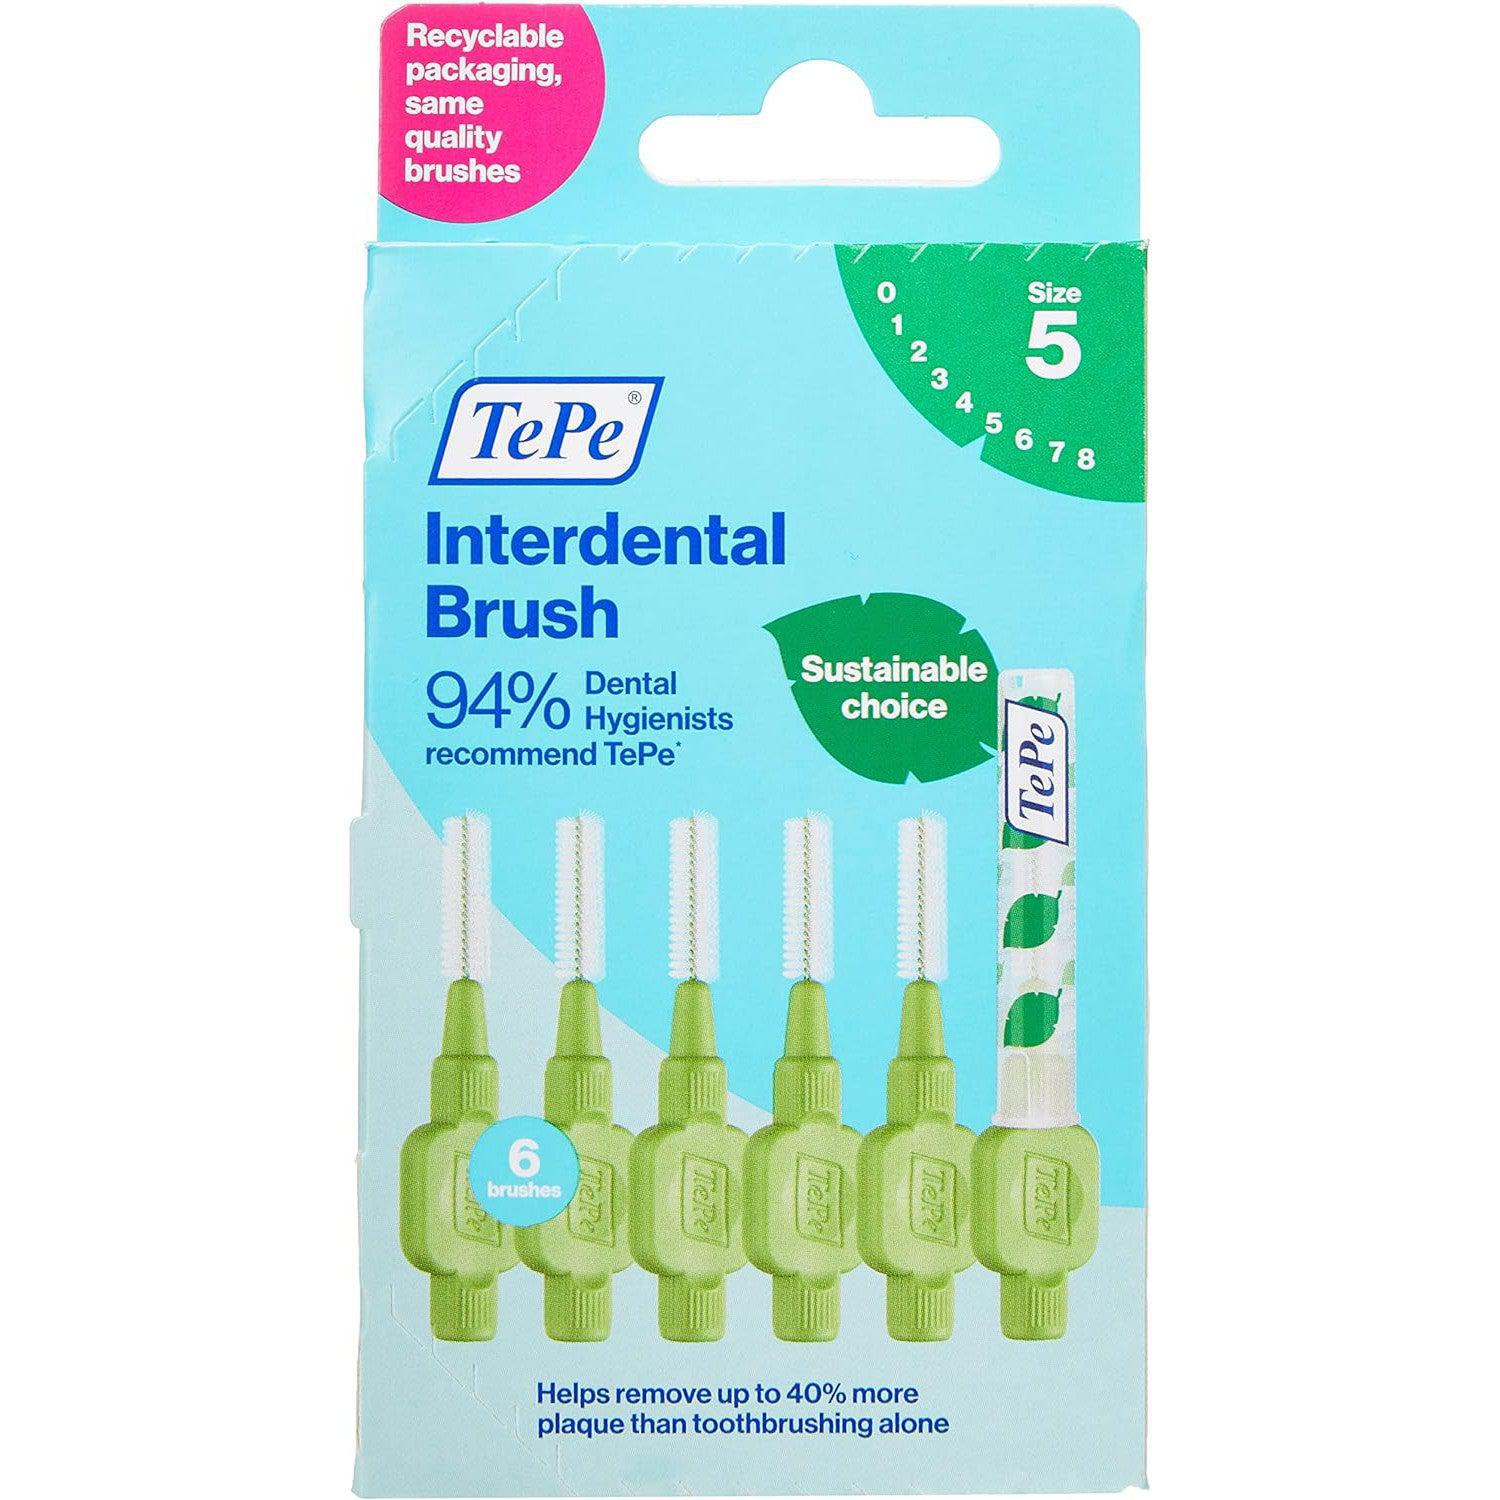 Tepe 0.8 mm Interdental Green Brushes - Pack of 6